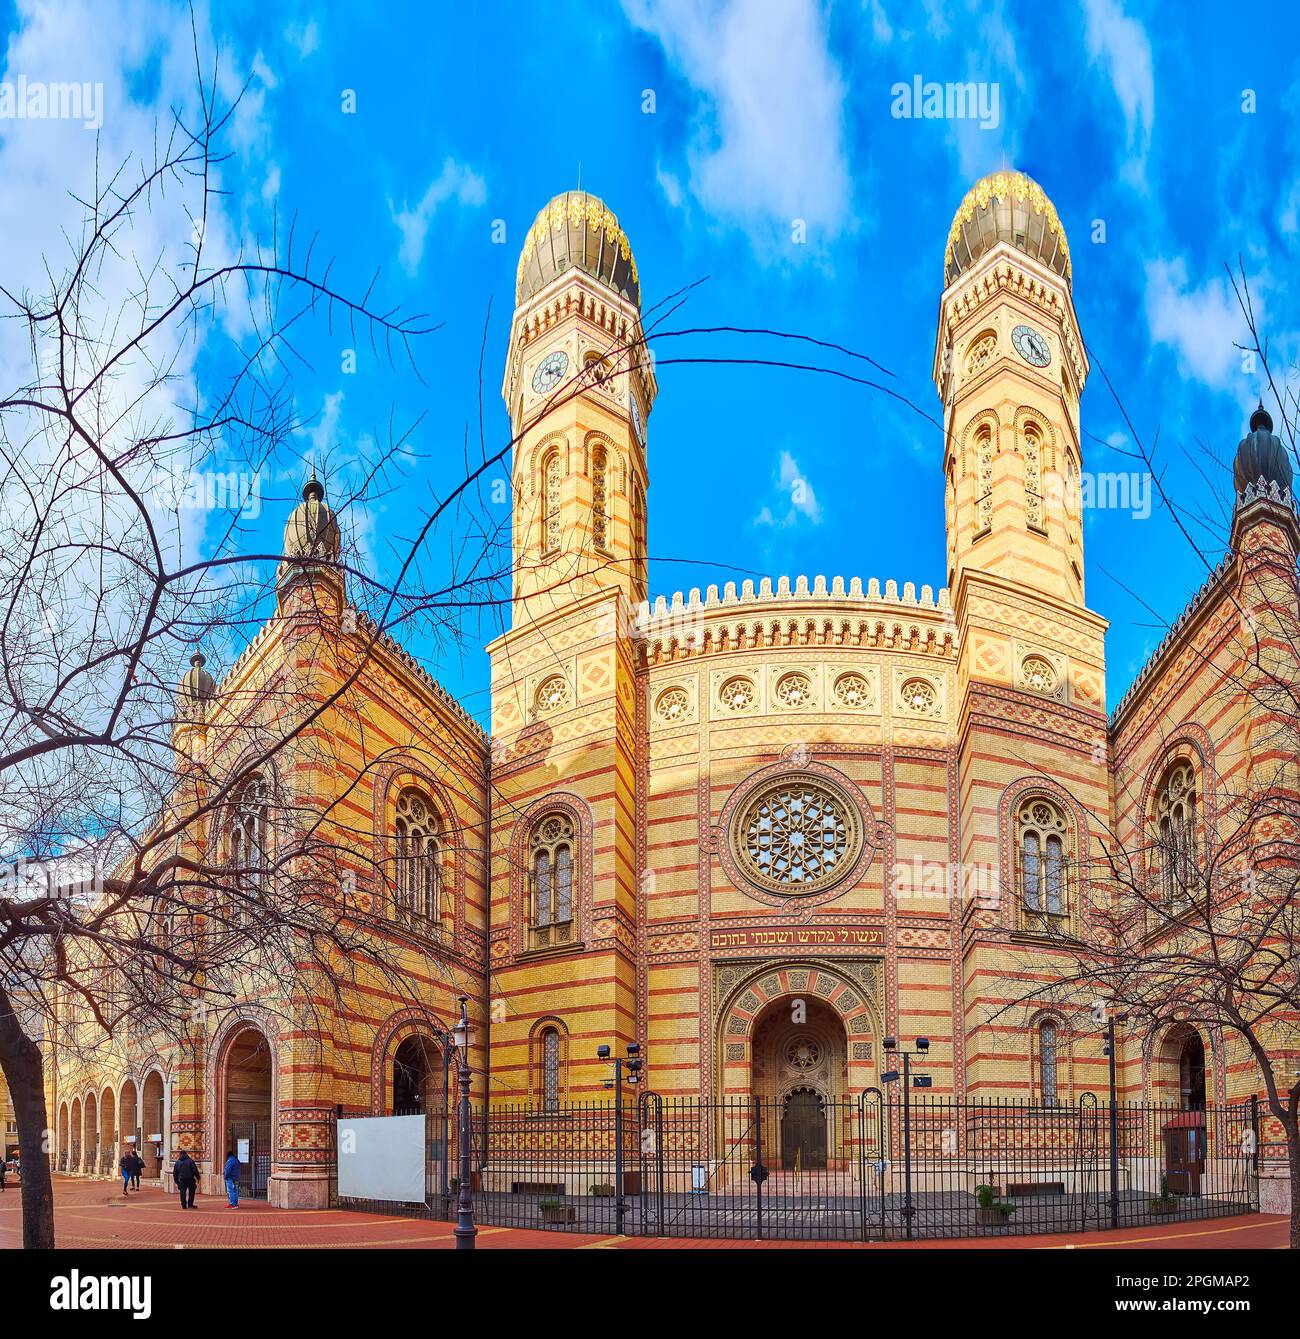 Die malerische maurische Fassade der Synagoge Dohany Street mit kugelförmigen Kuppeln auf den Uhrtürmen, Rosenfenstern, Schnitzereien und Farbmustern Stockfoto